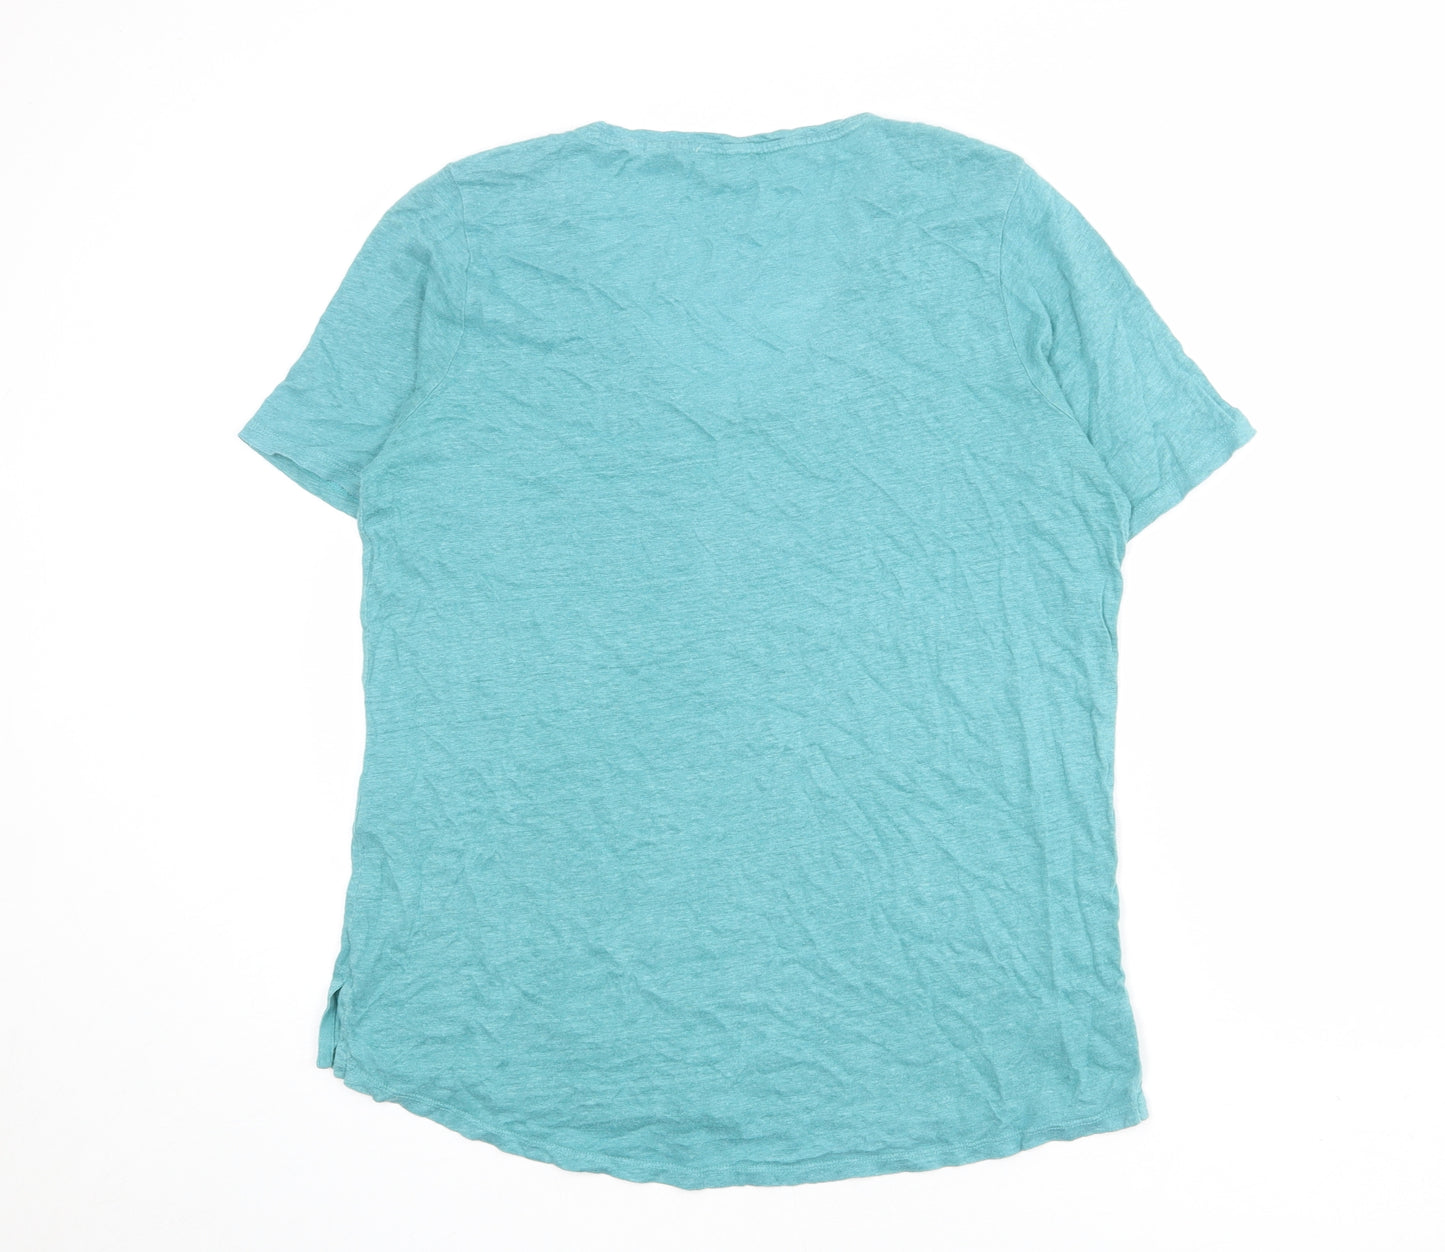 Fat Face Womens Blue Linen Basic T-Shirt Size 12 Scoop Neck